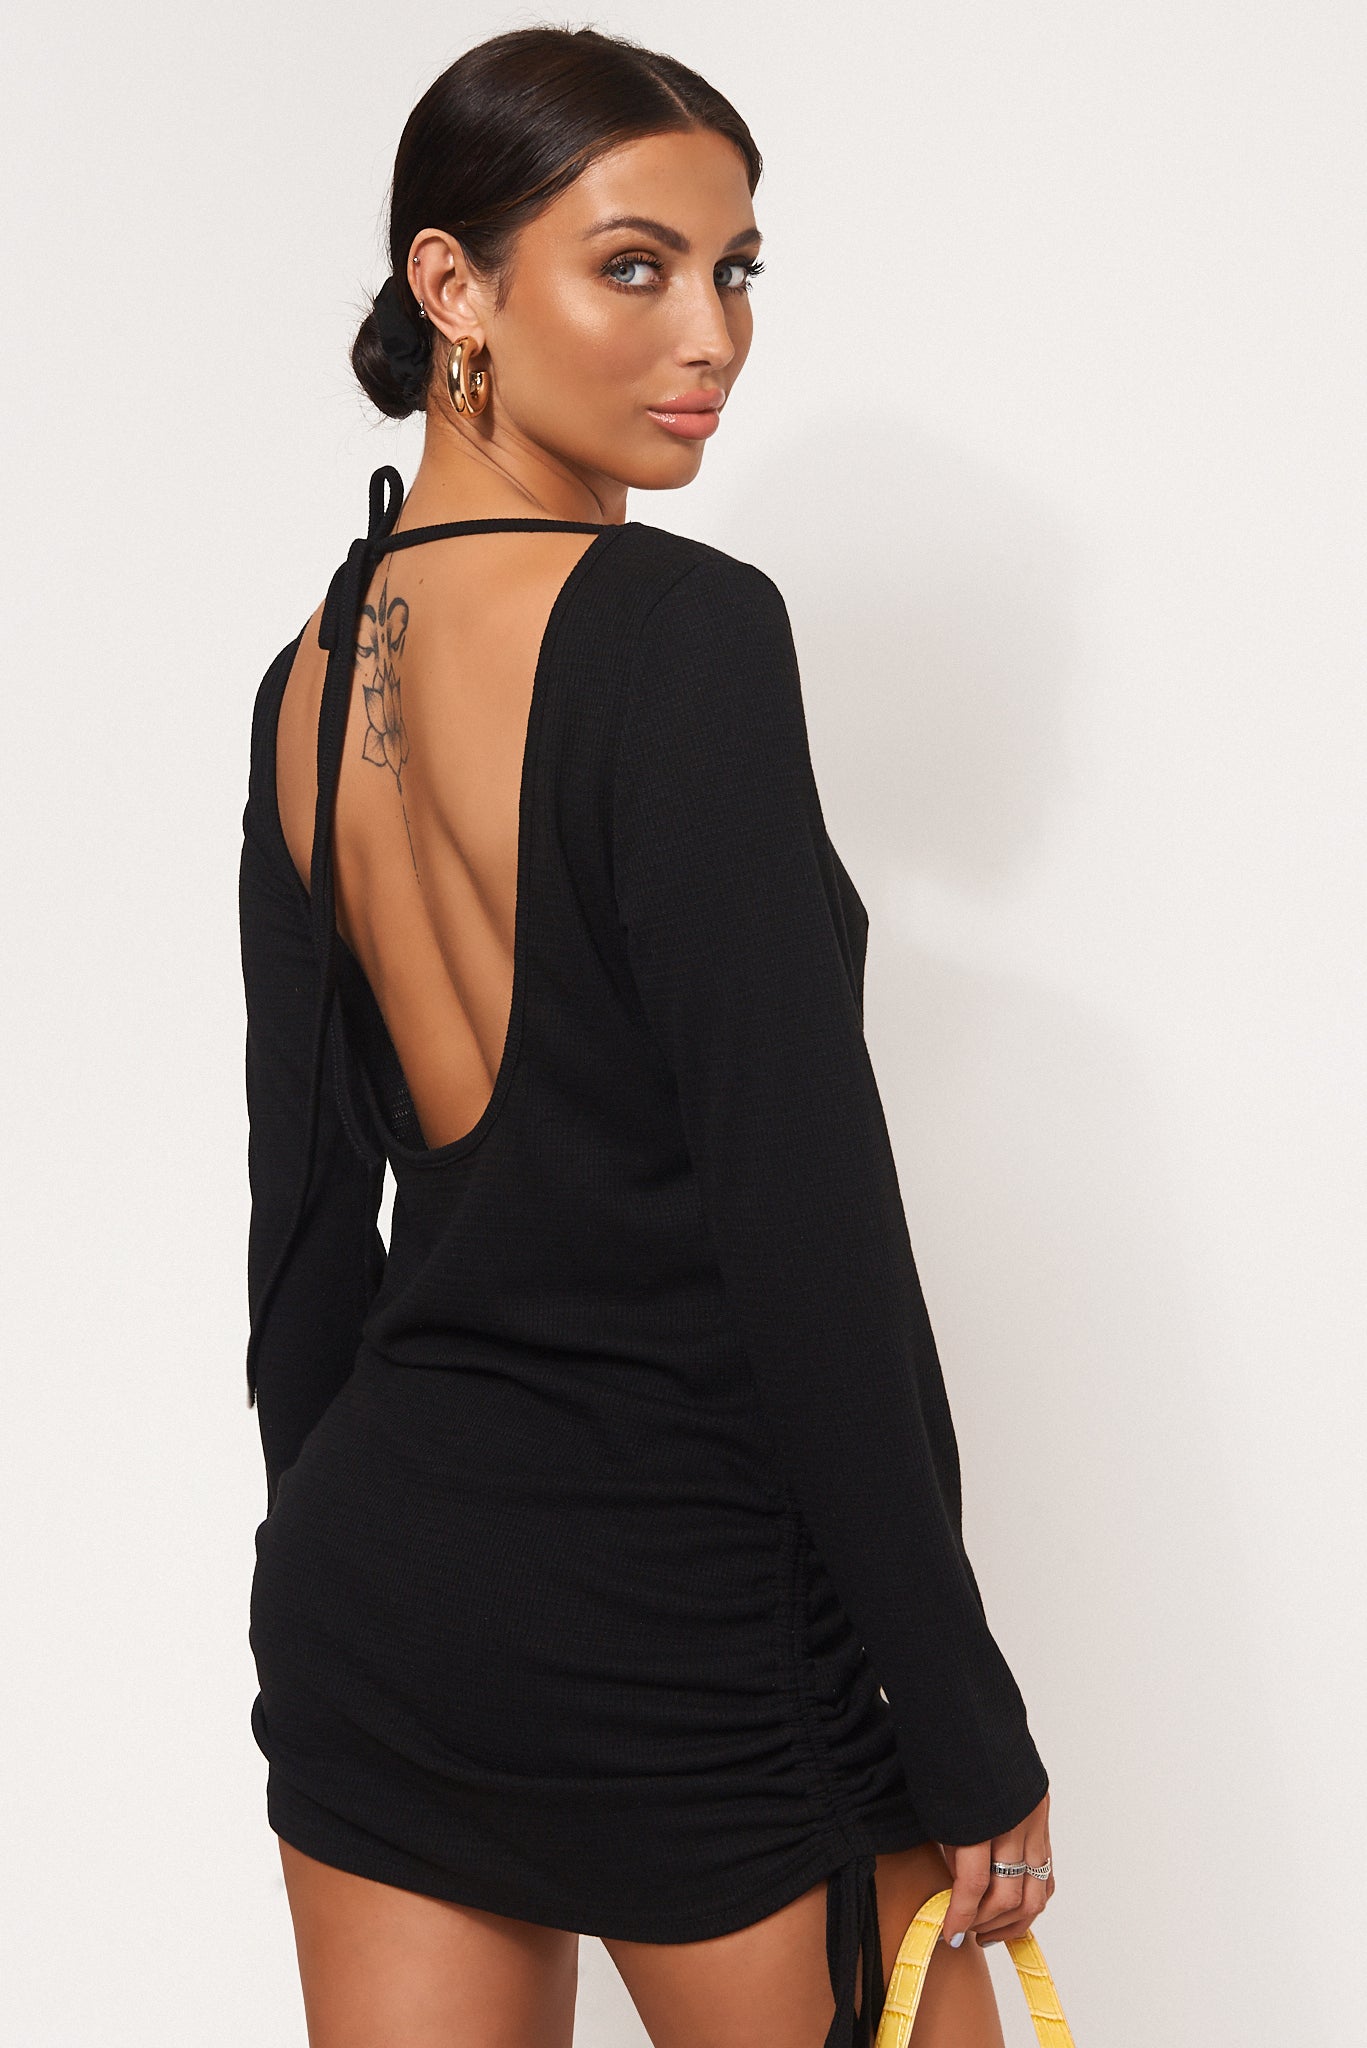 Malia Black Backless Mini Dress